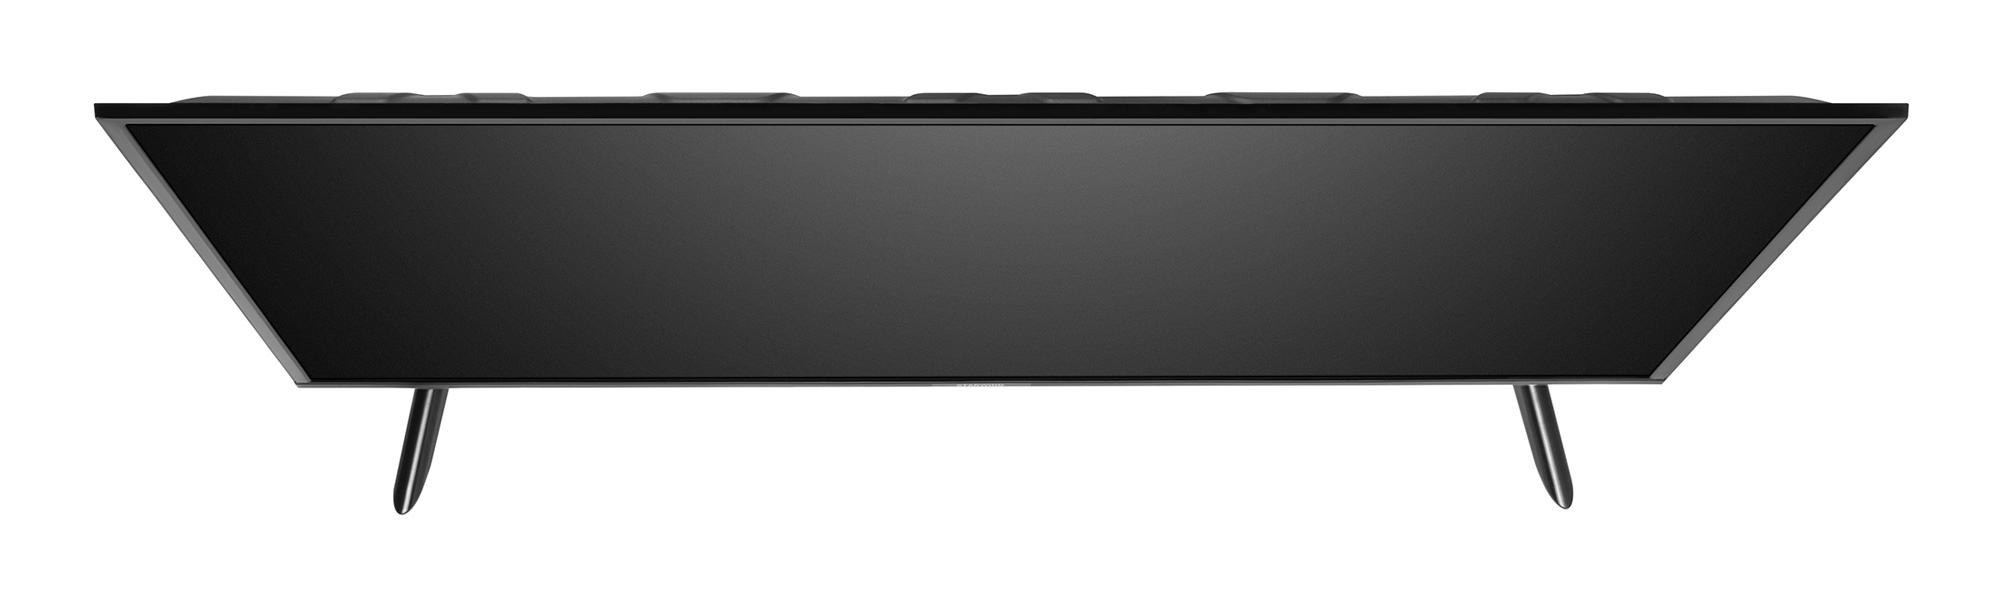 Телевизор Starwind Яндекс.ТВ SW-LED55UB401, 55", LED, 4K Ultra HD, черный от магазина Старвинд